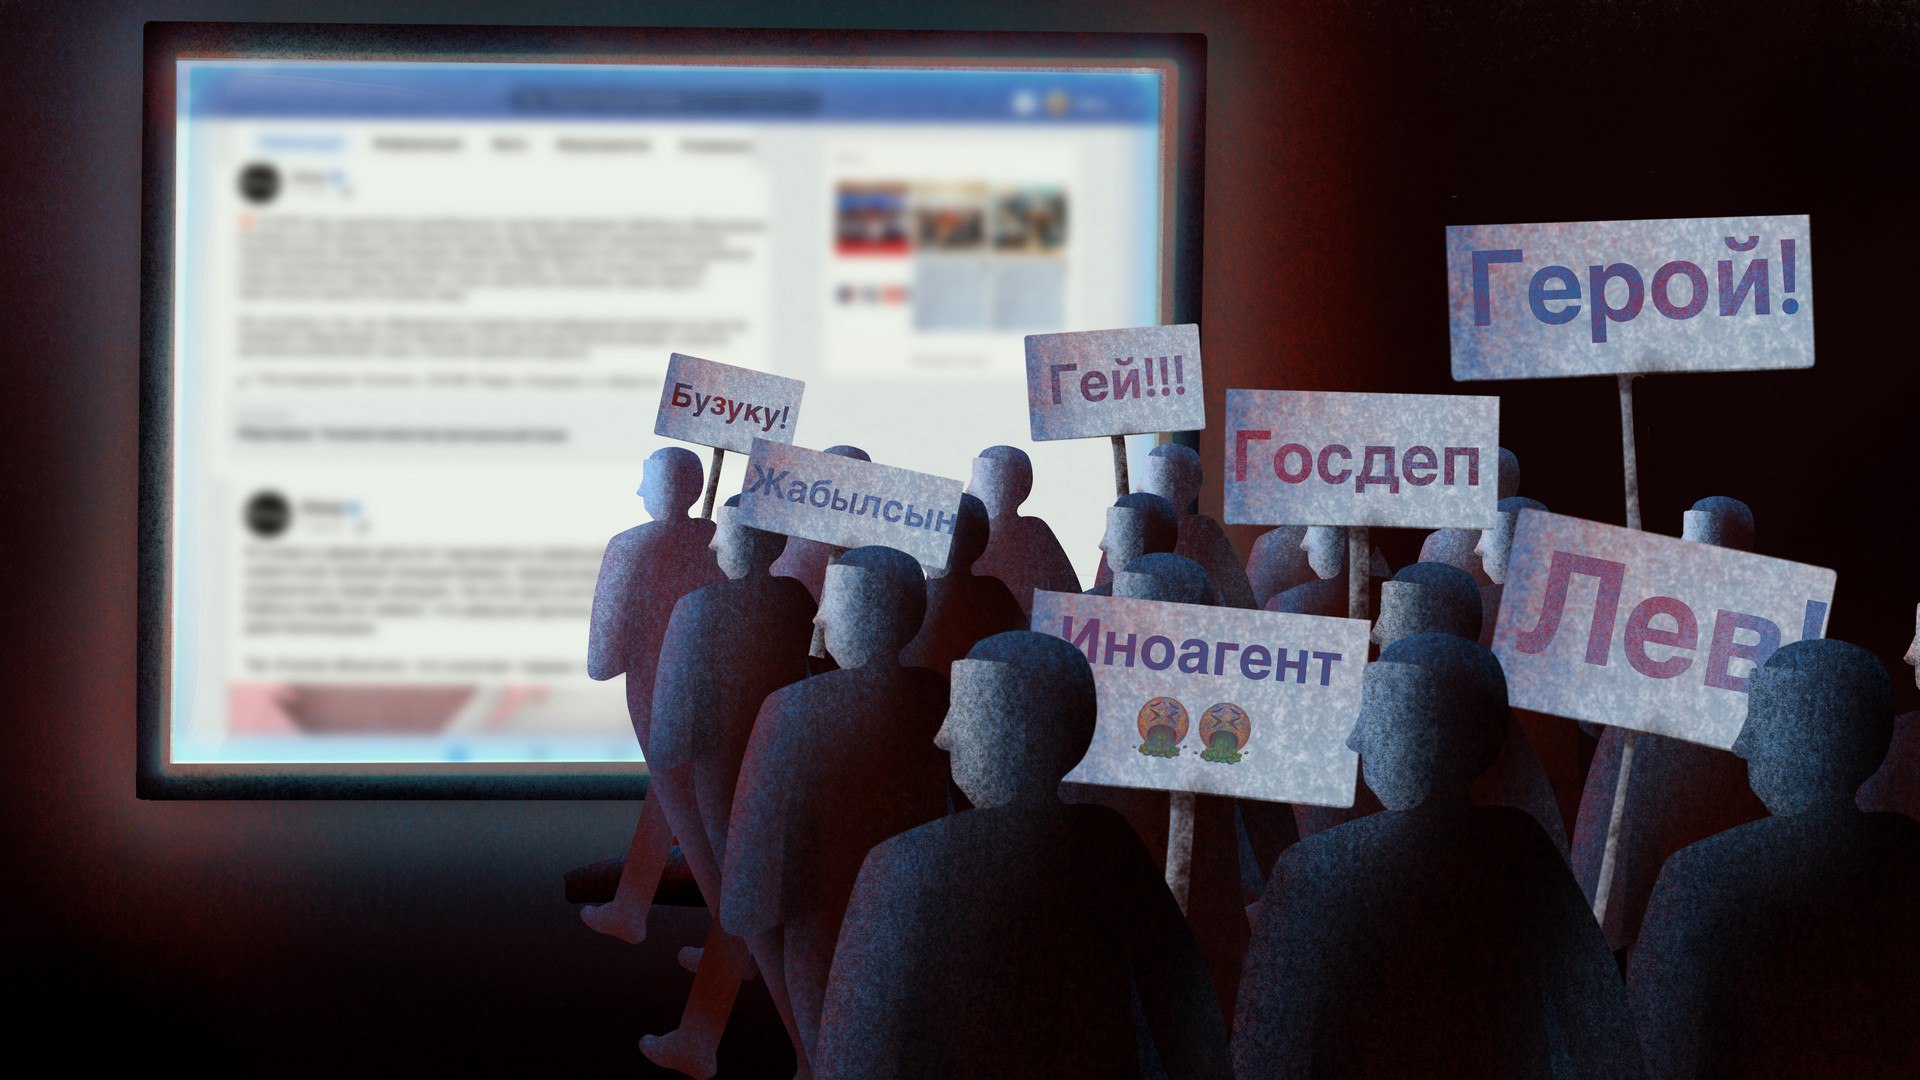 Камчыбек-баатыр. Как активность анонимных пользователей соцсетей предваряла политсобытия в Кыргызстане